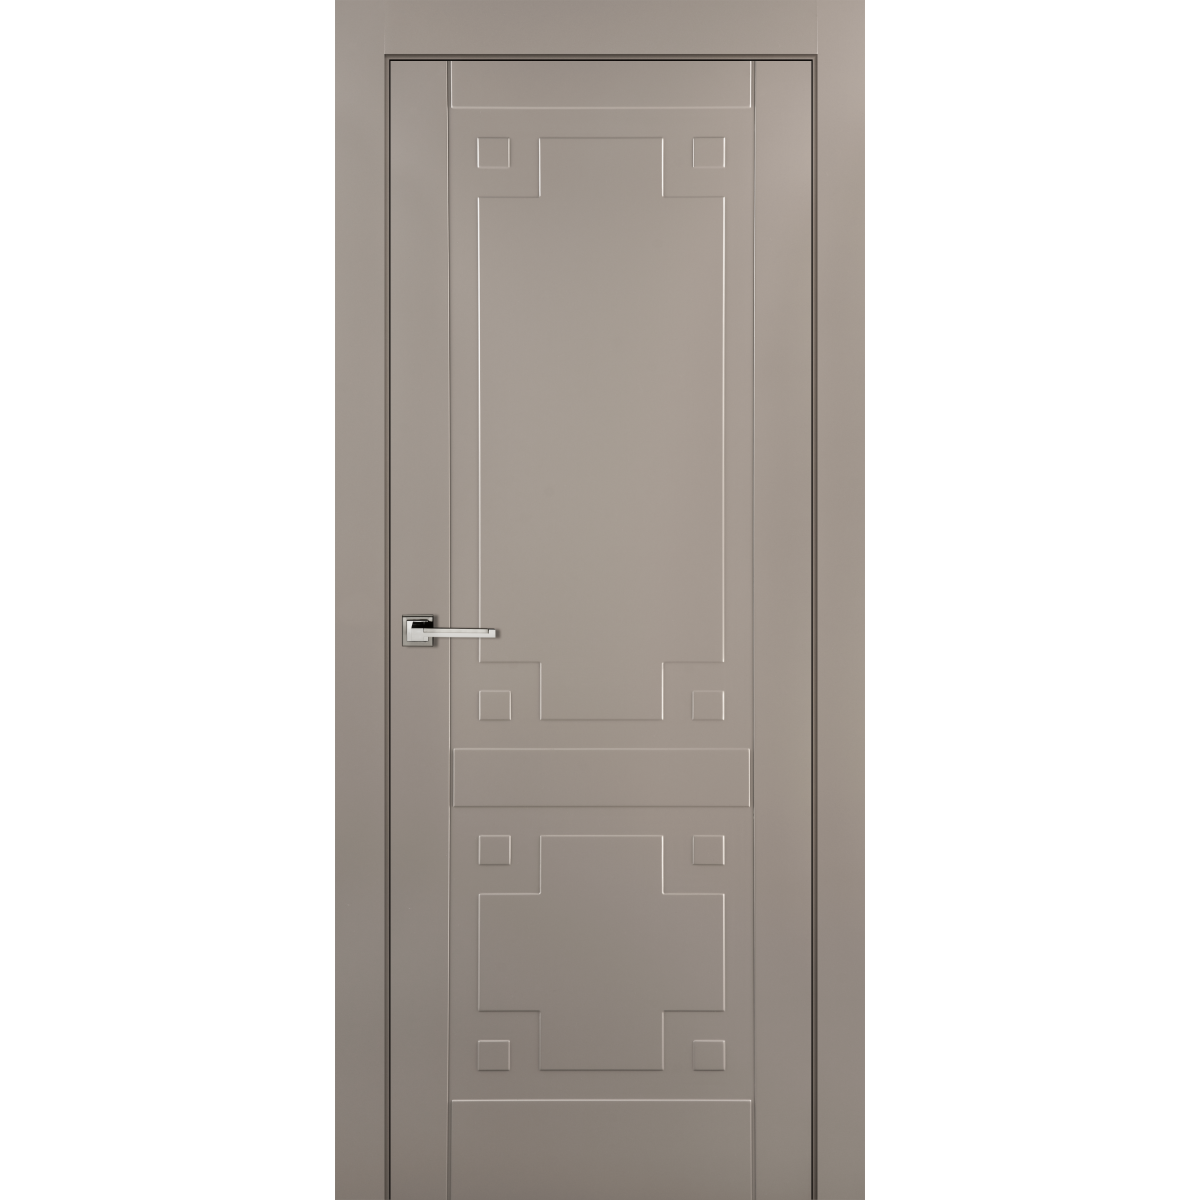 Дверь межкомнатная глухая с замком в комплекте Лира 80x200 см эмаль цвет мускат